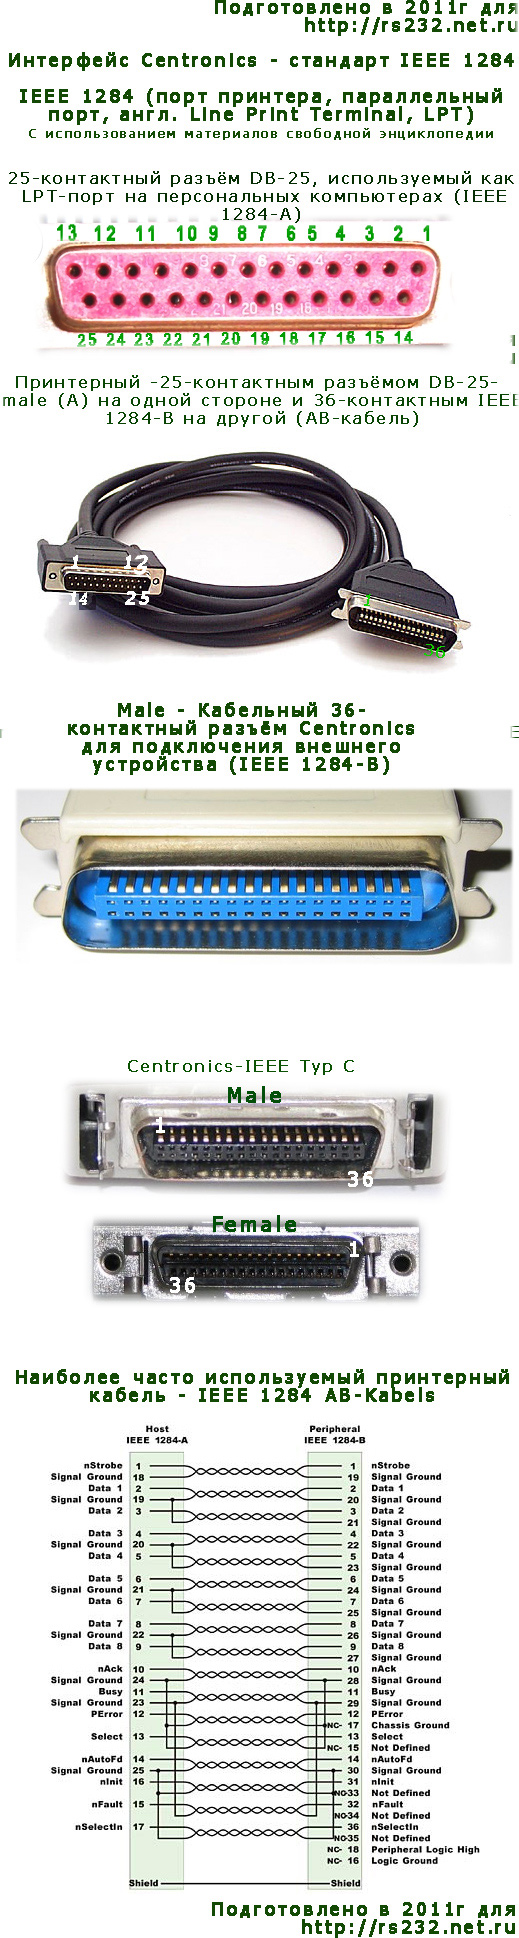 Подбор подходящего кабеля для типа принтера